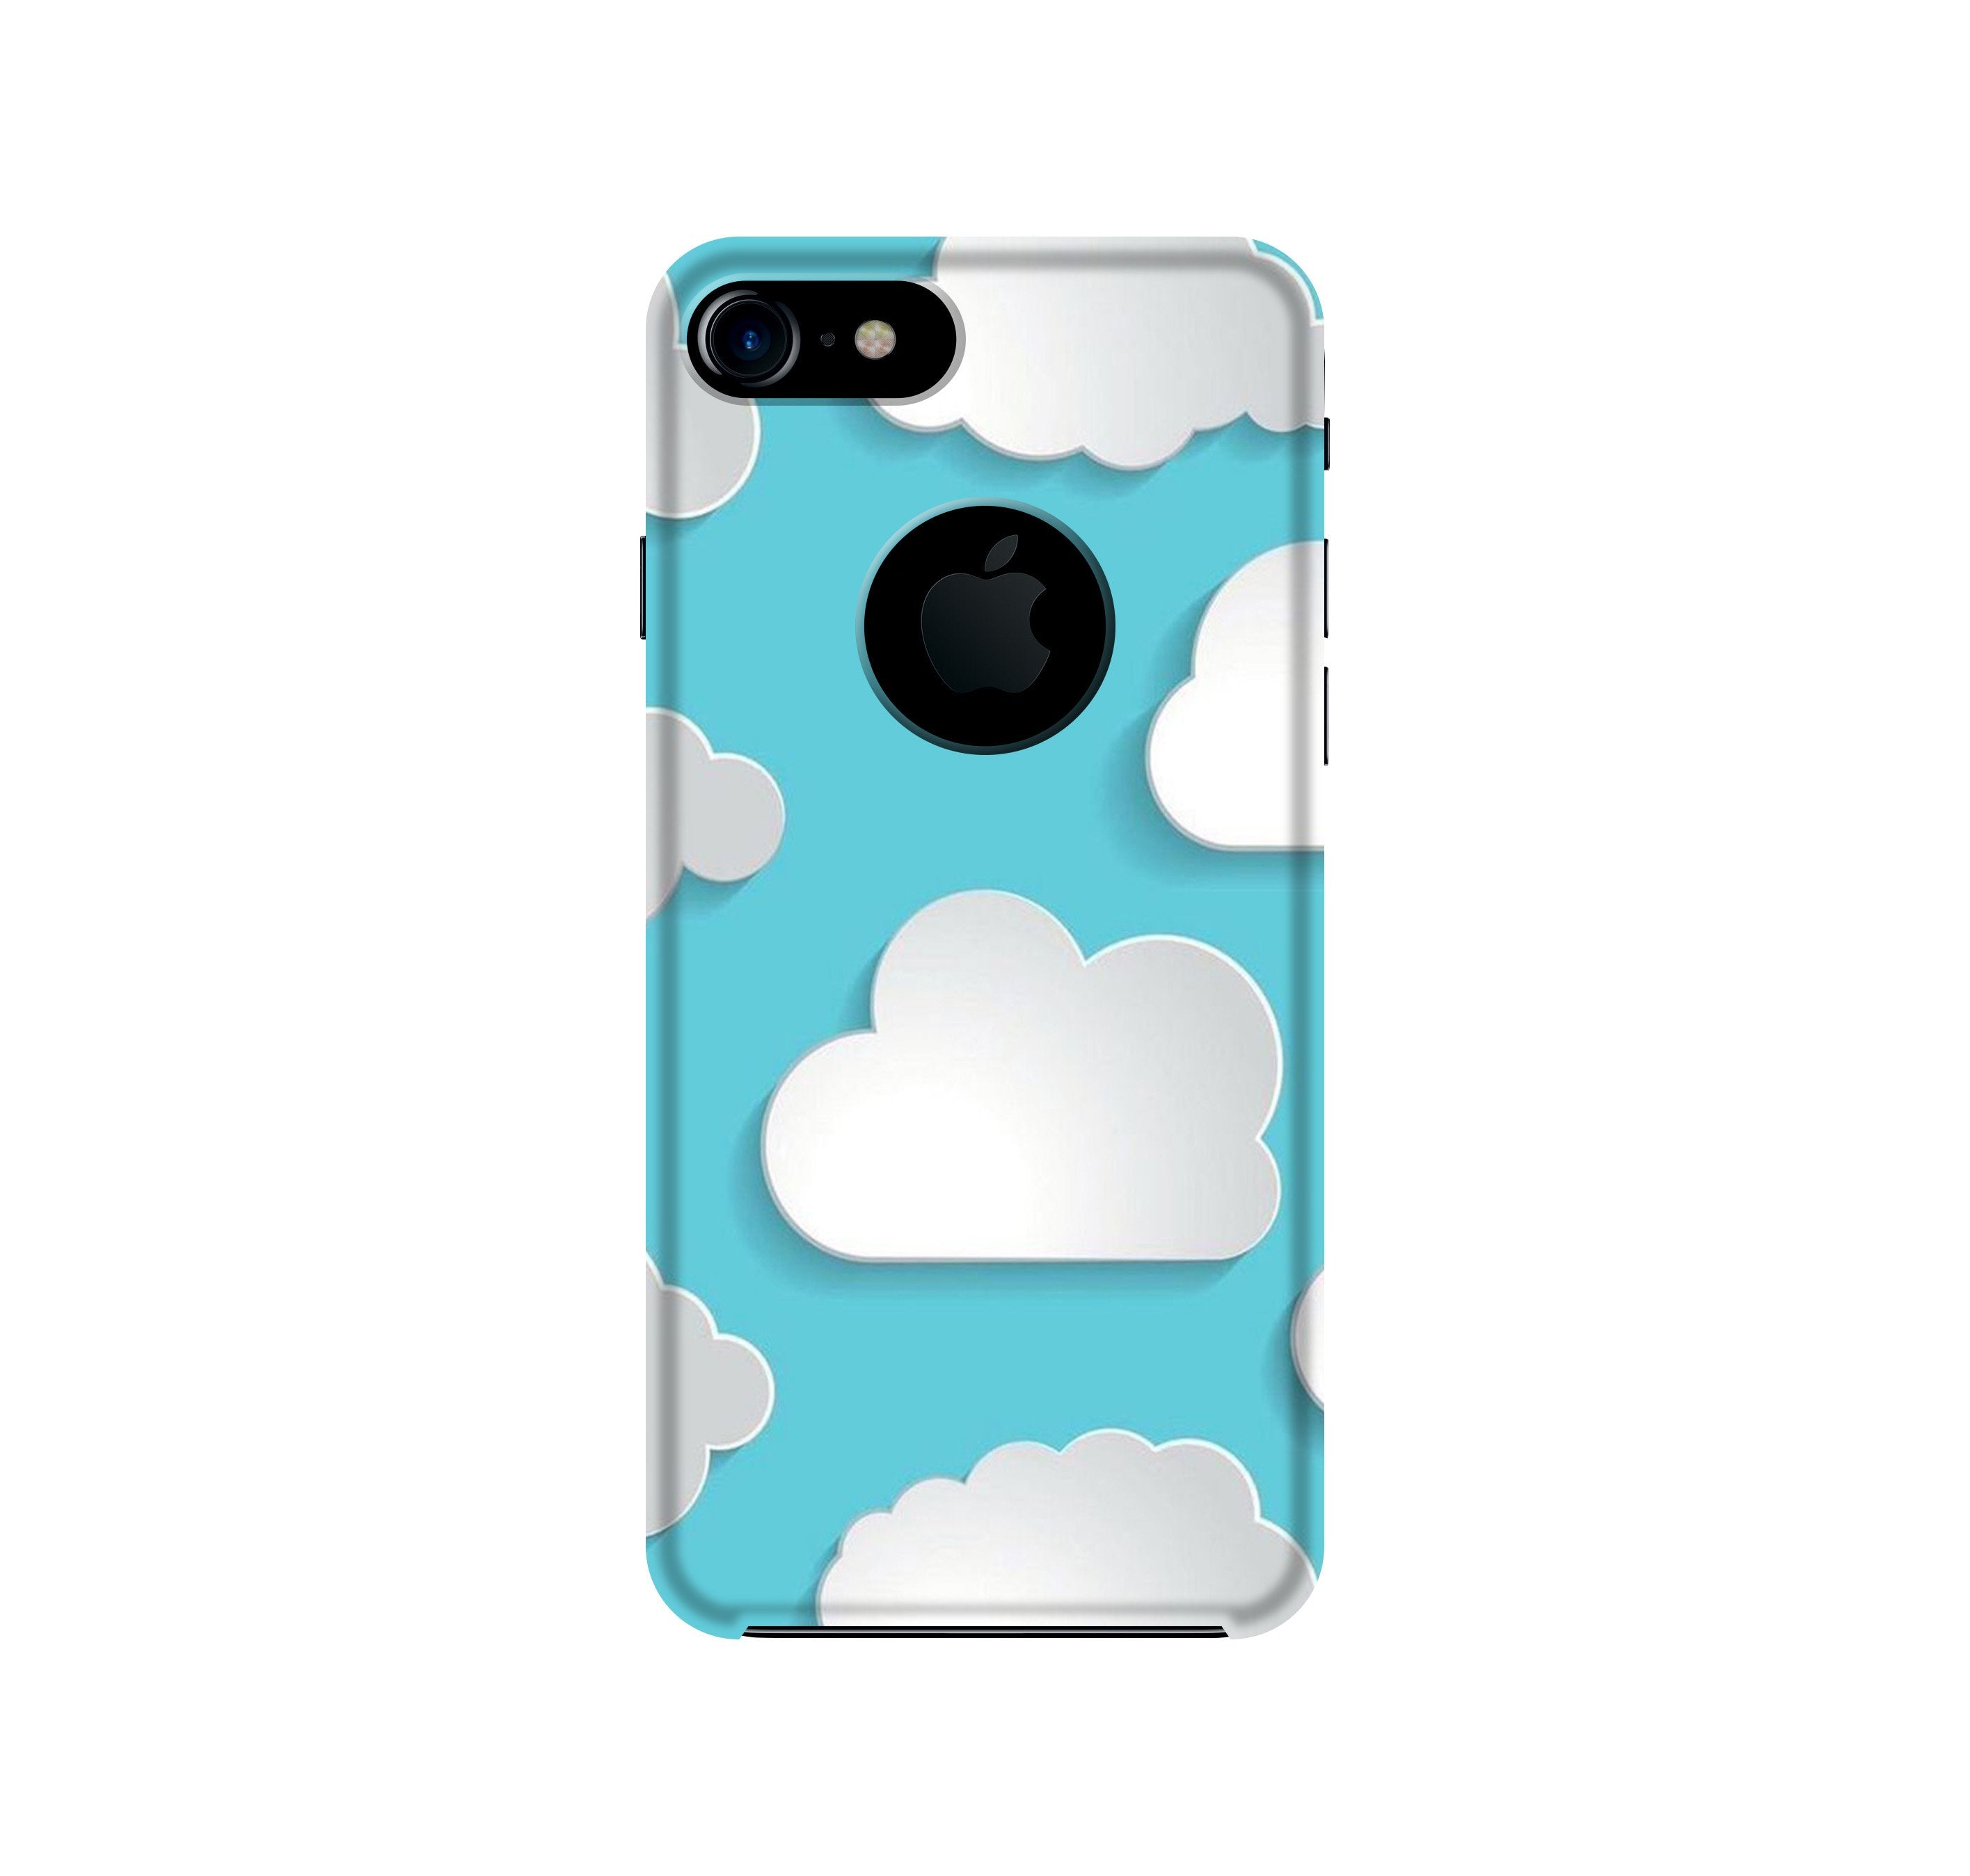 Clouds Case for iPhone 7 logo cut (Design No. 210)